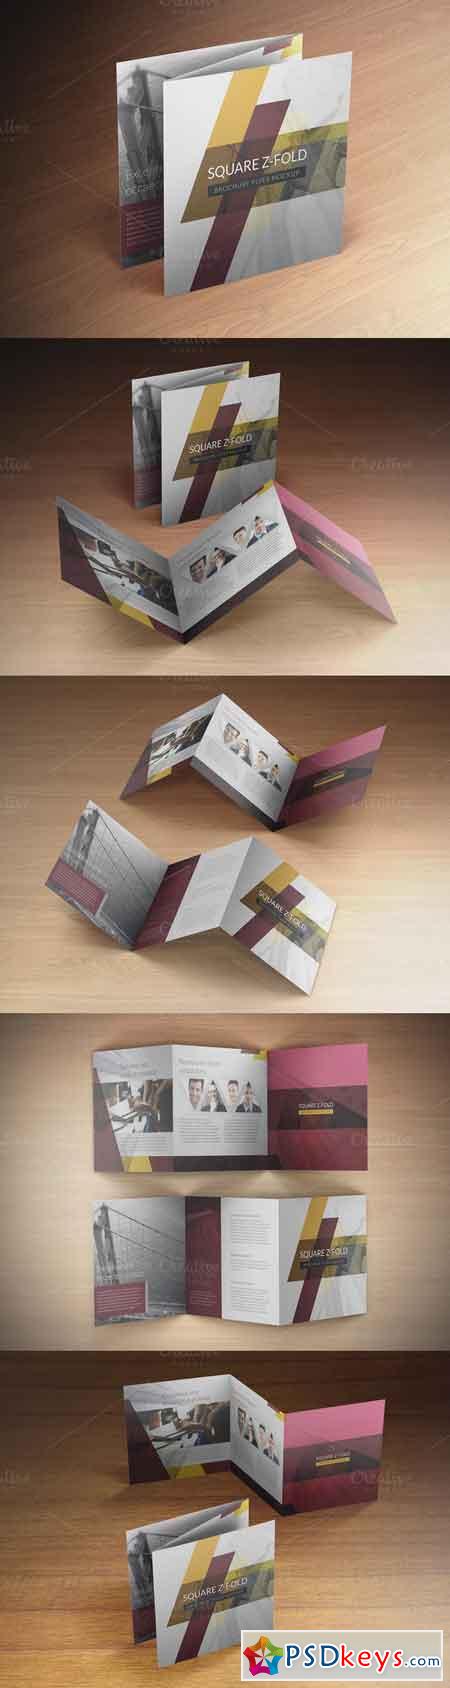 Square Z-Fold Brochure Mockup 595982